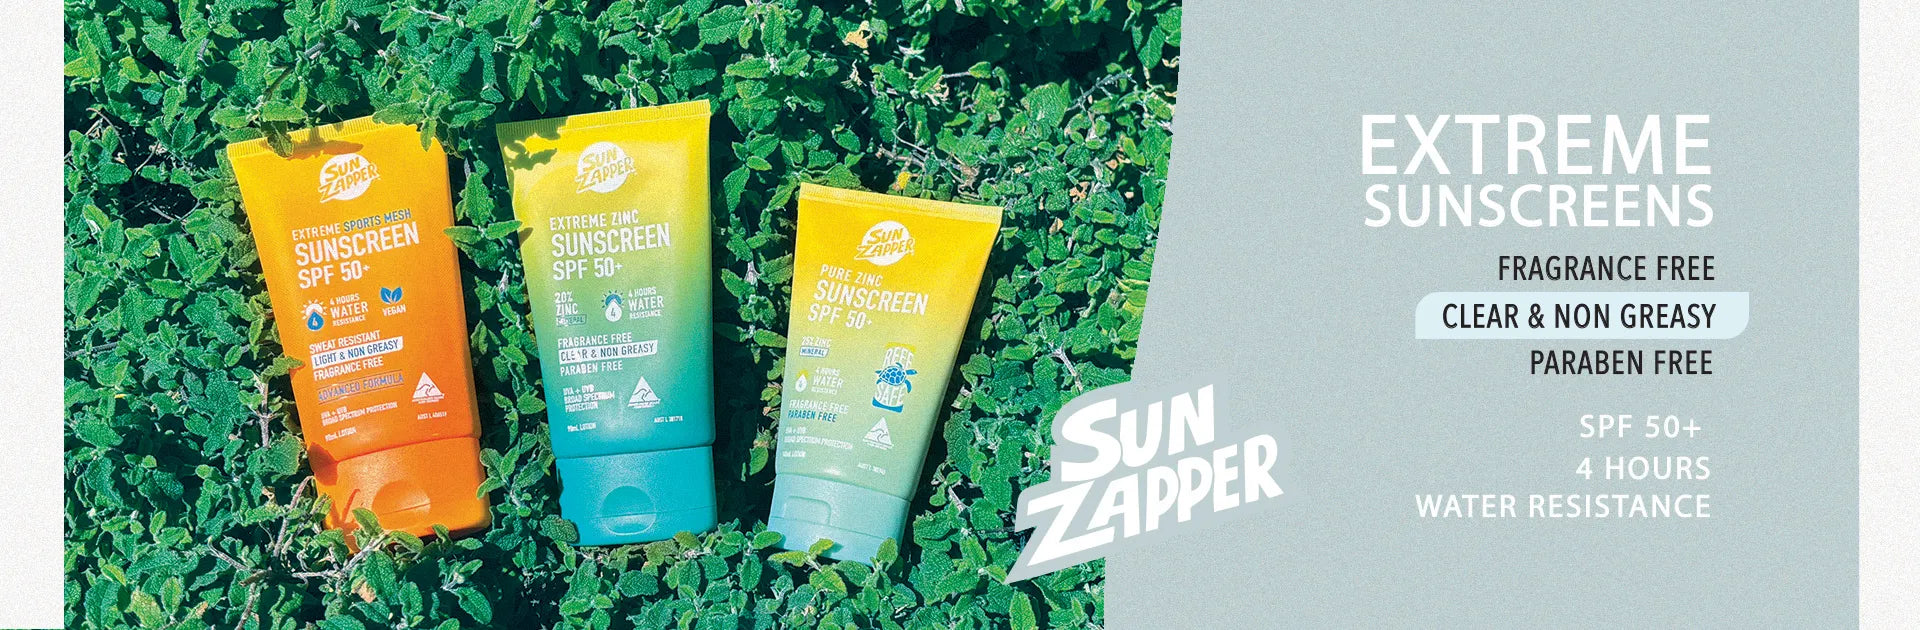 Extreme Pure Zinc Sunscreen, Surfing, Sun Zapper Zinc Sticks Dunedin New Zealand